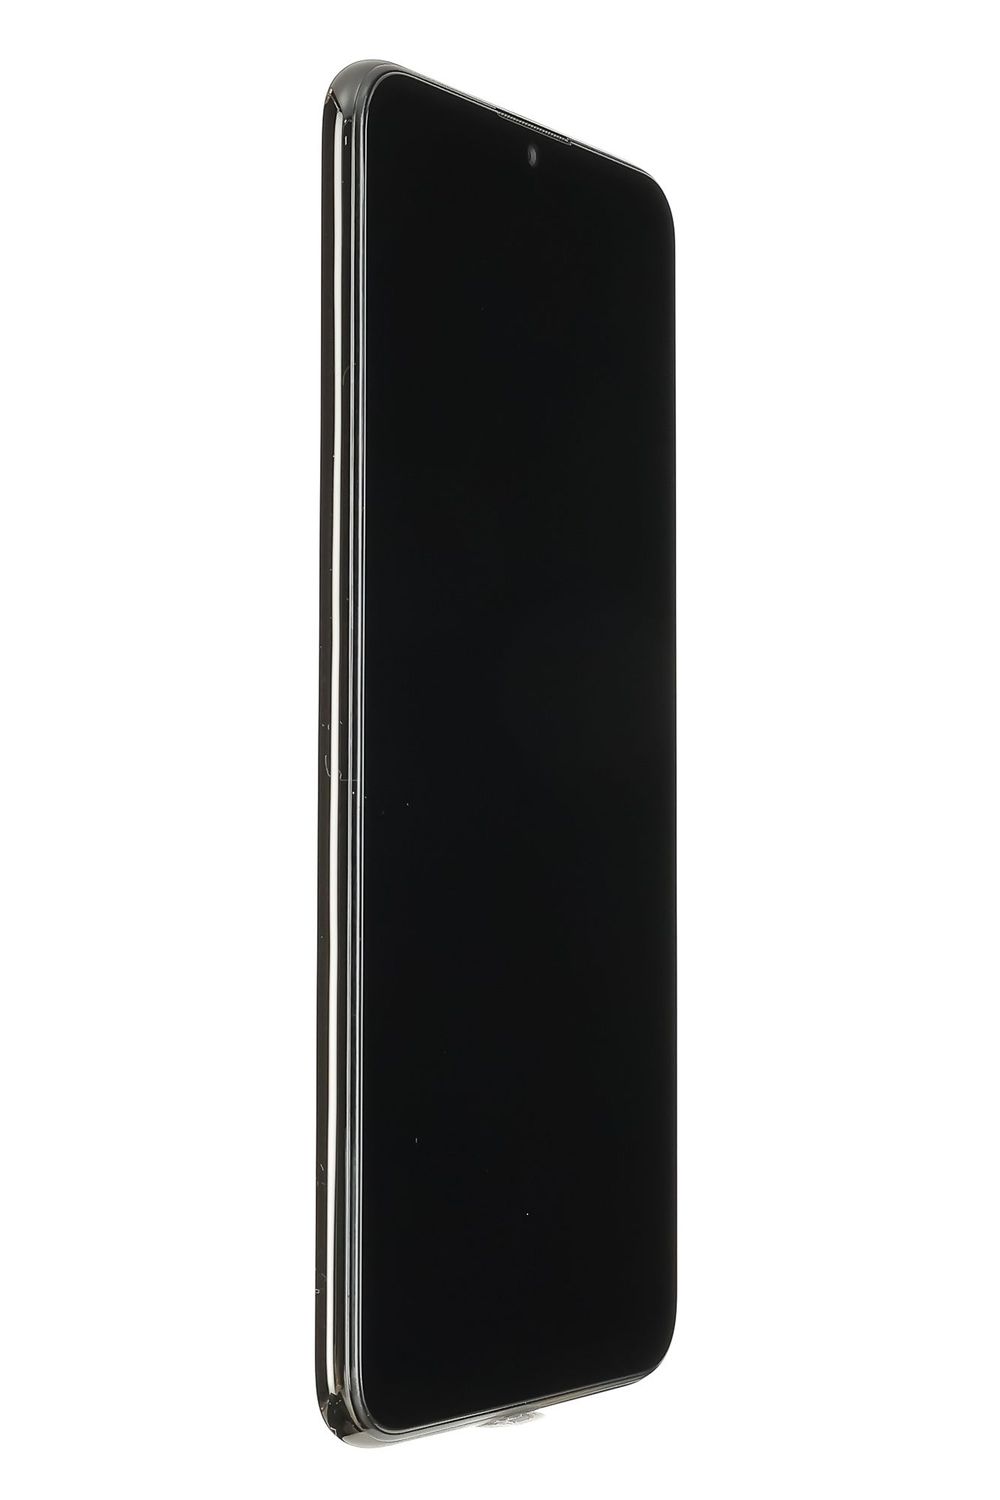 Mobiltelefon Huawei P Smart (2019), Midnight Black, 32 GB, Foarte Bun